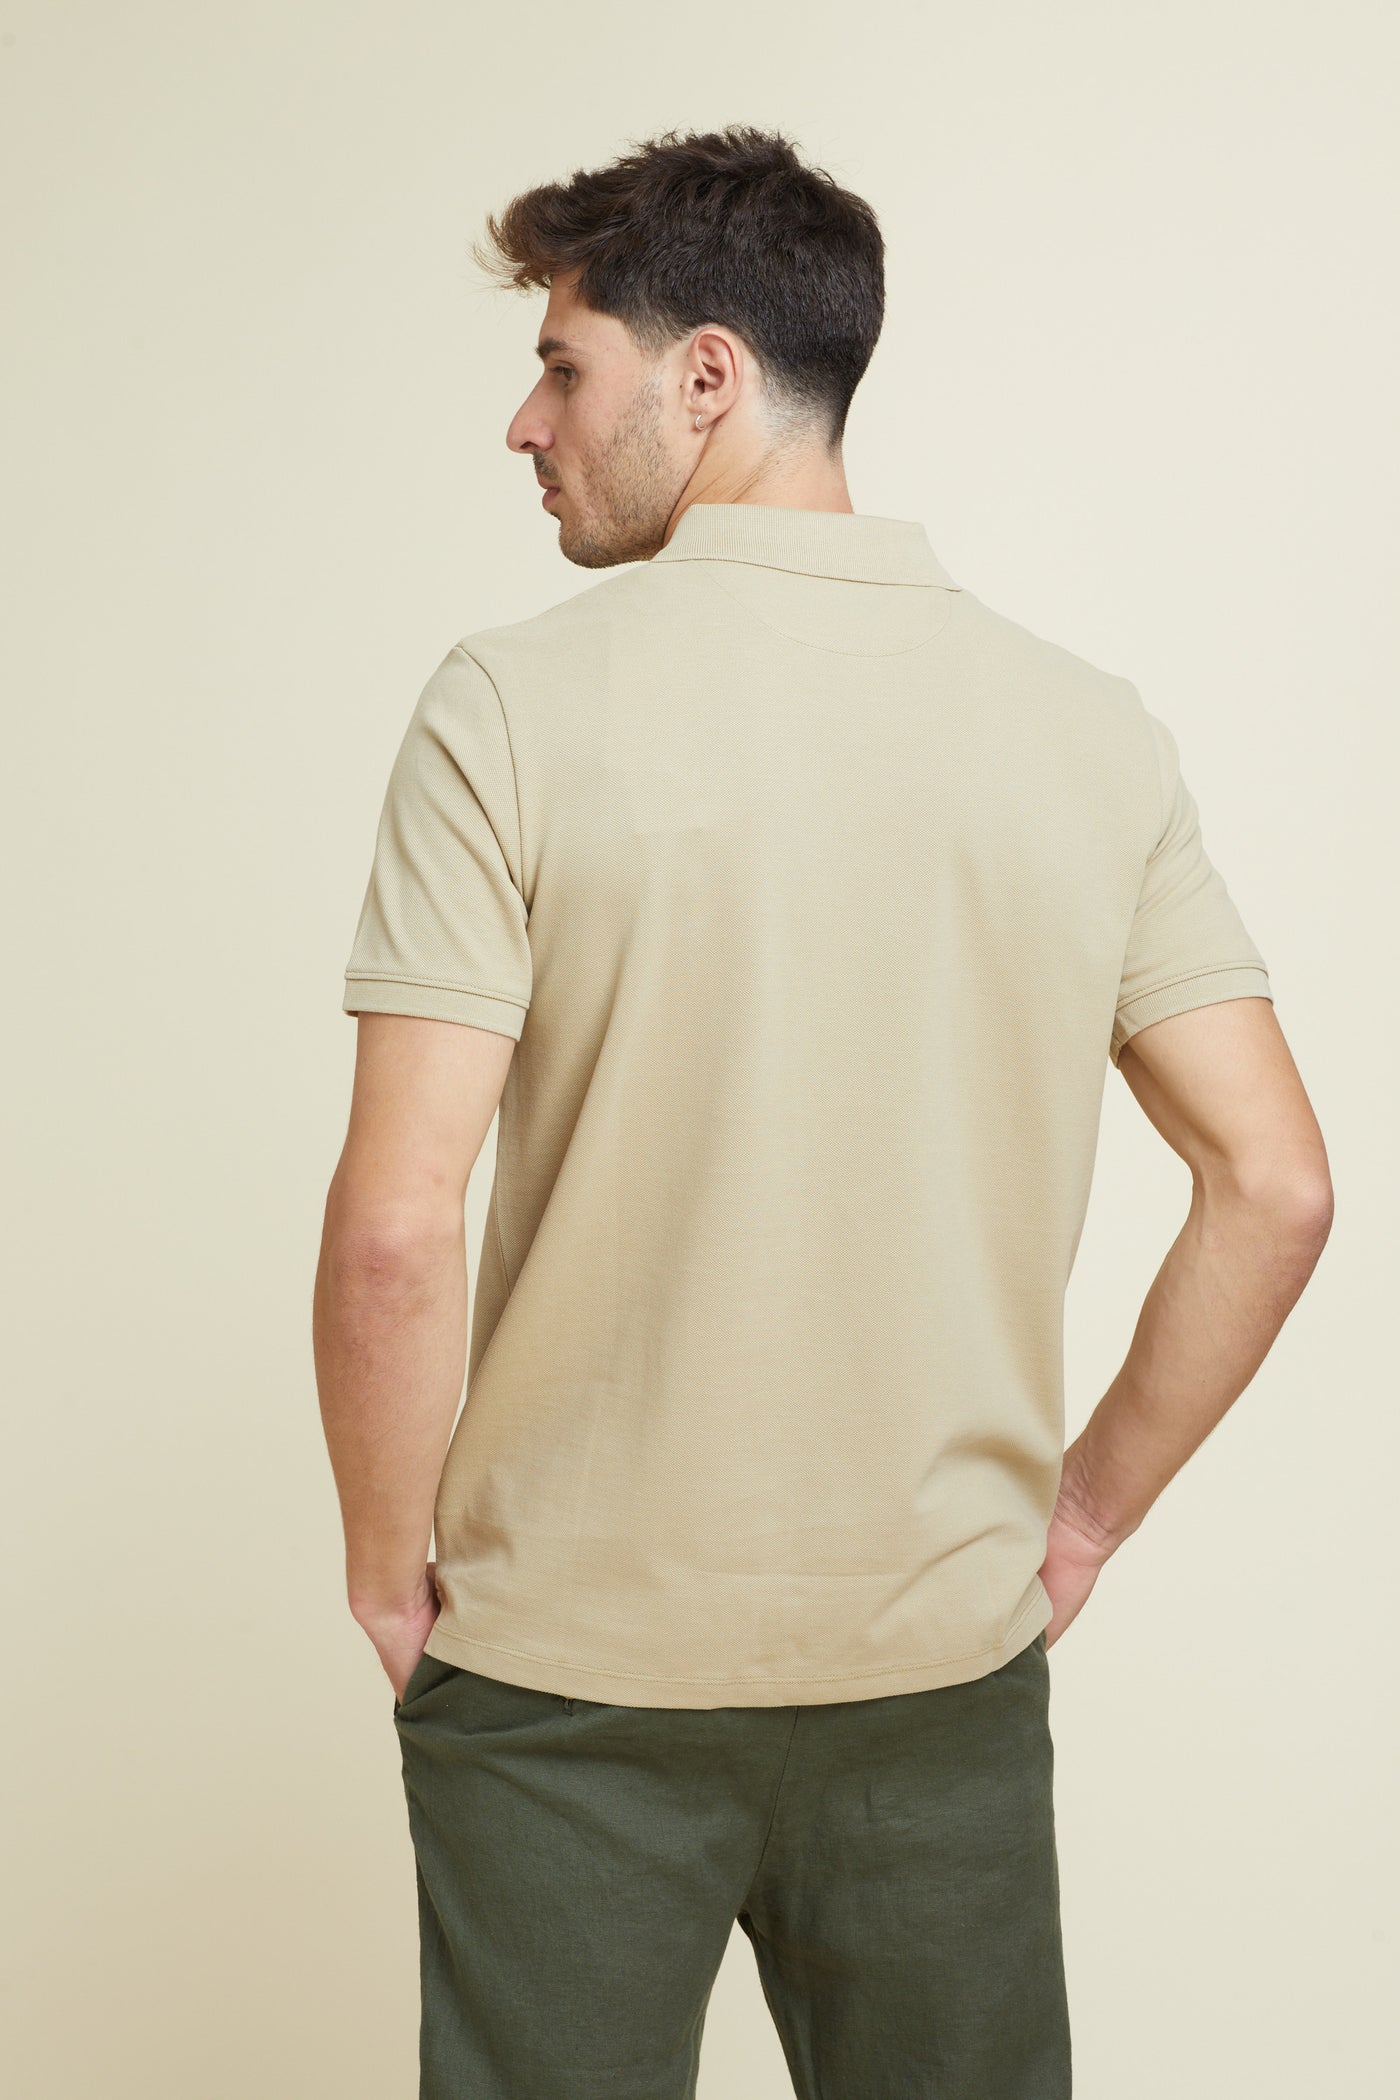 חולצת פולו REGULAR FIT שרוול קצר בצבע מוקה